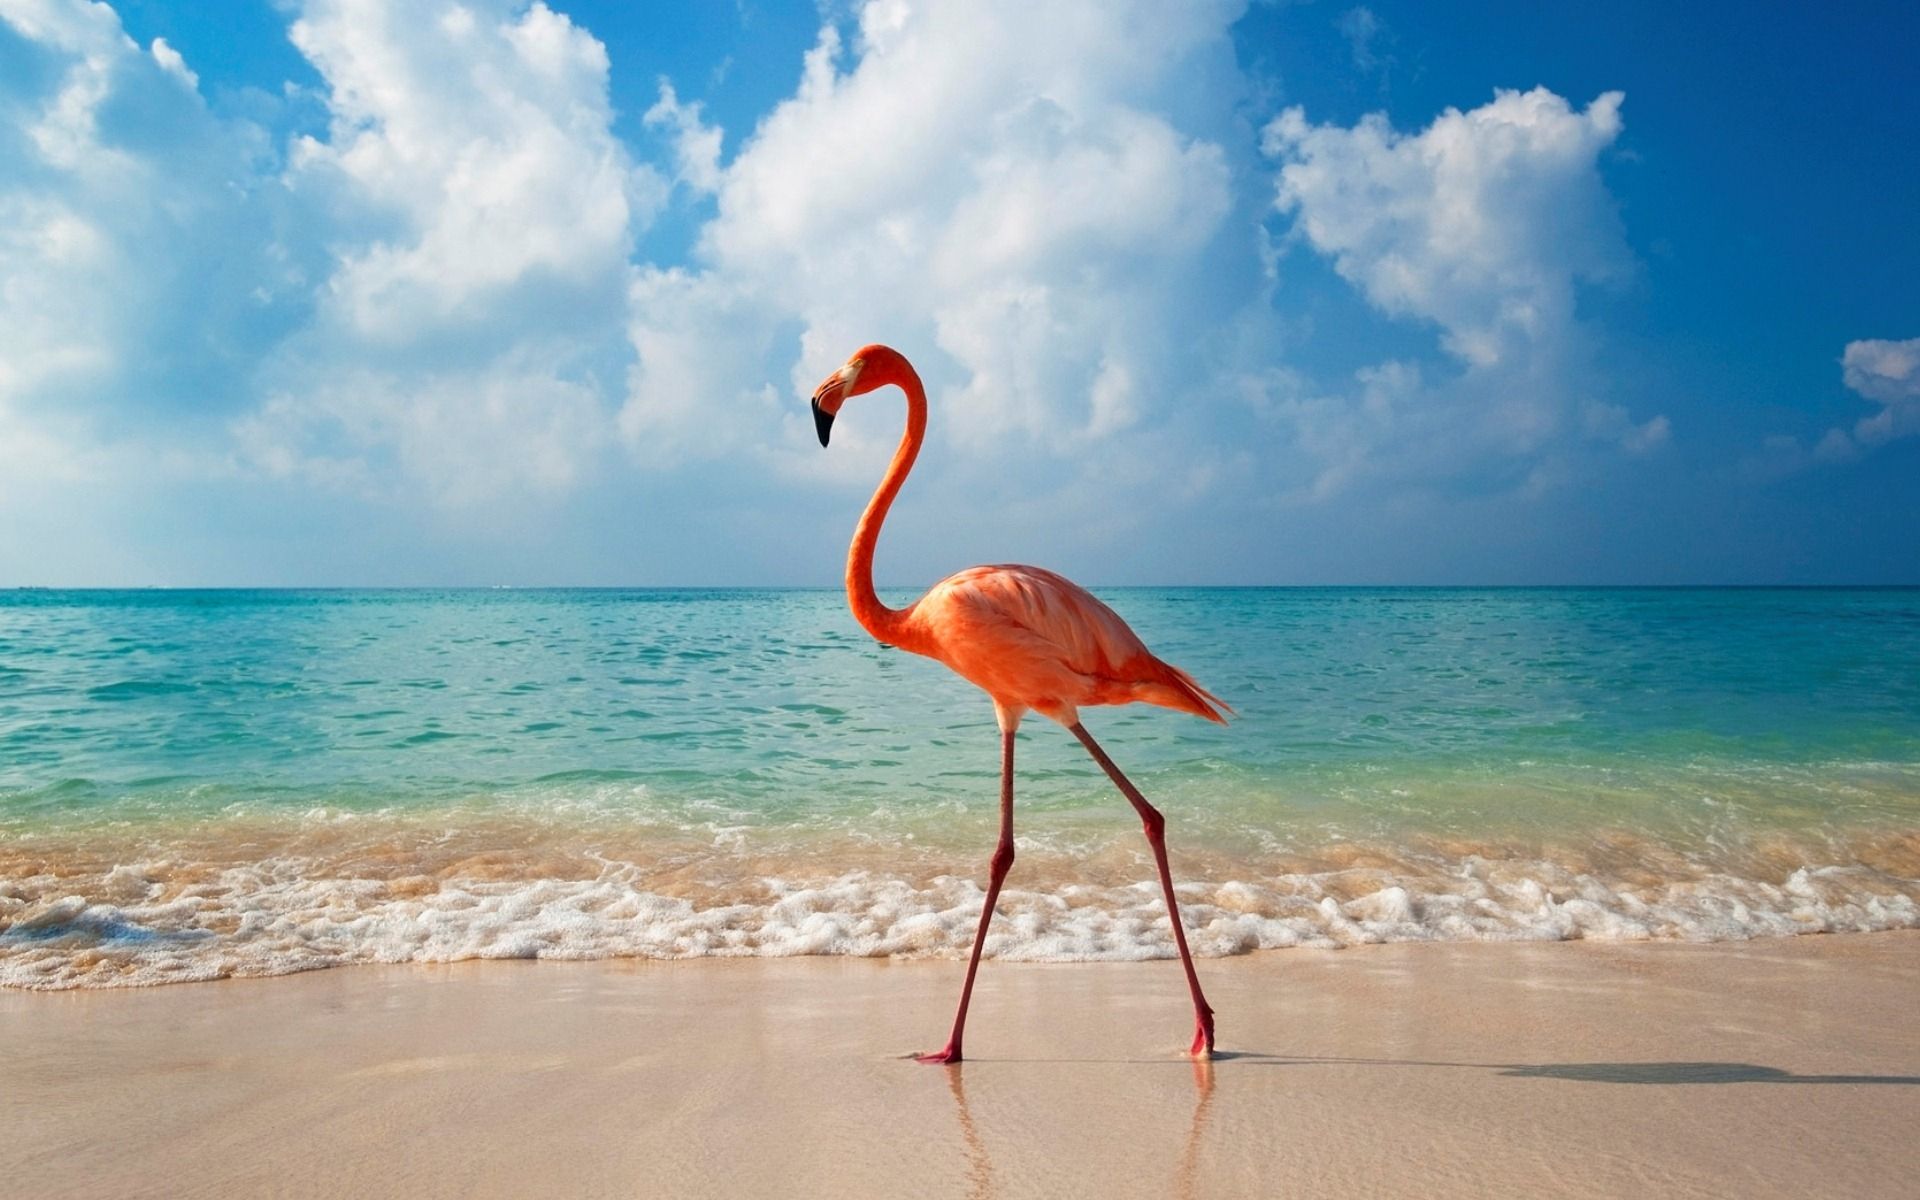  Flamingo Hintergrundbild 1920x1200. Laden Sie Das Flamingo Hintergrundbild Für Ihr Handy In Hochwertigen, Hintergrundbildern Flamingo Kostenlos Herunter